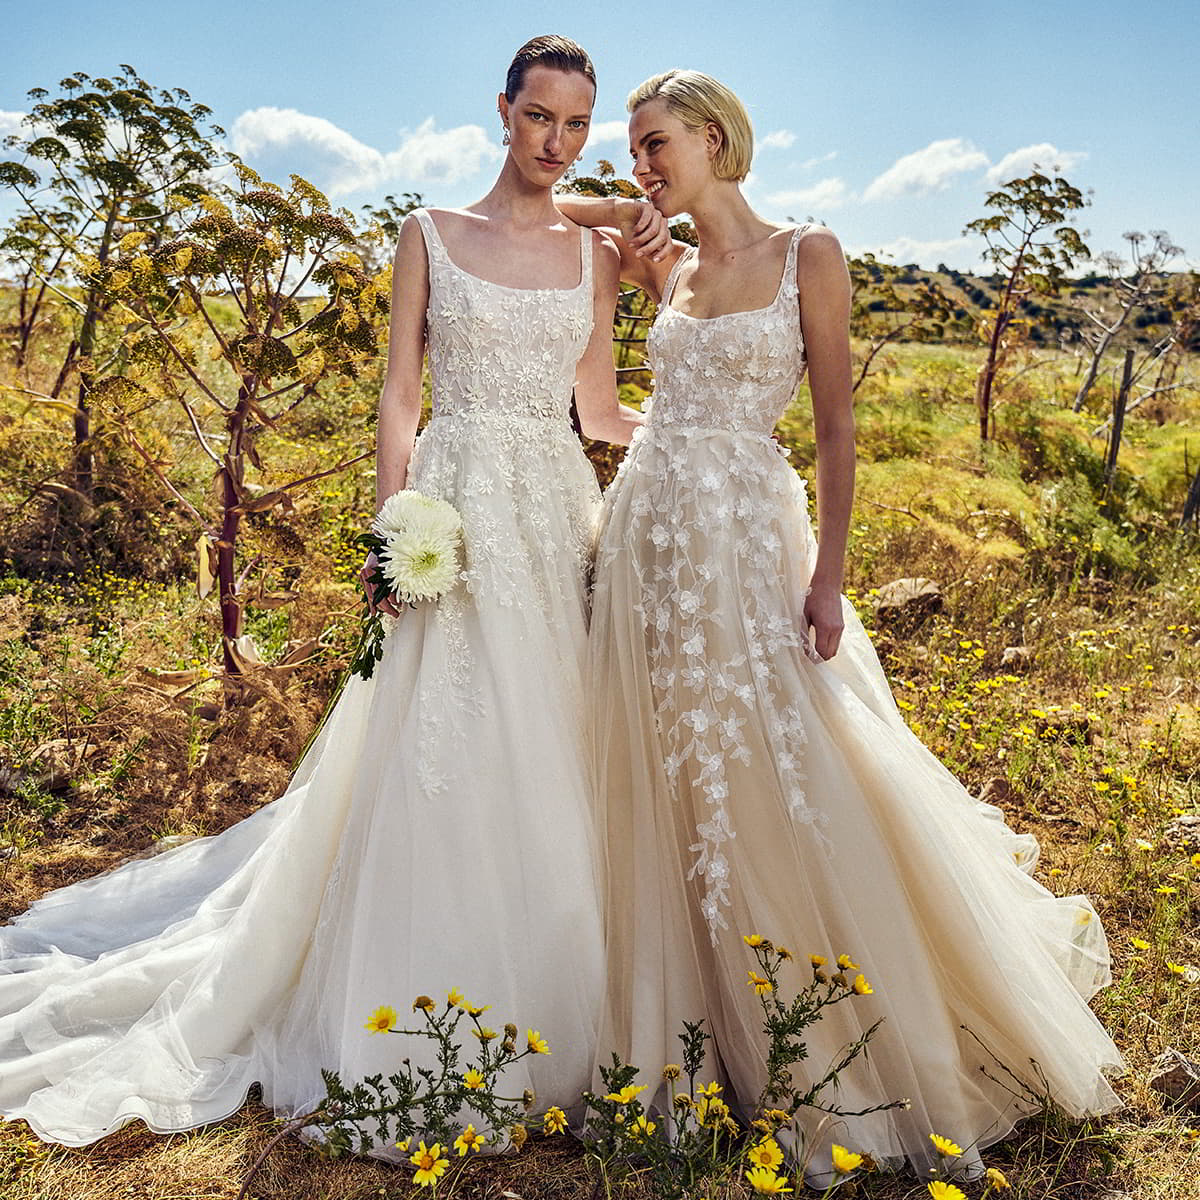 costarellos spring 2022 bridal collection featured on wedding inspirasi thumbnail